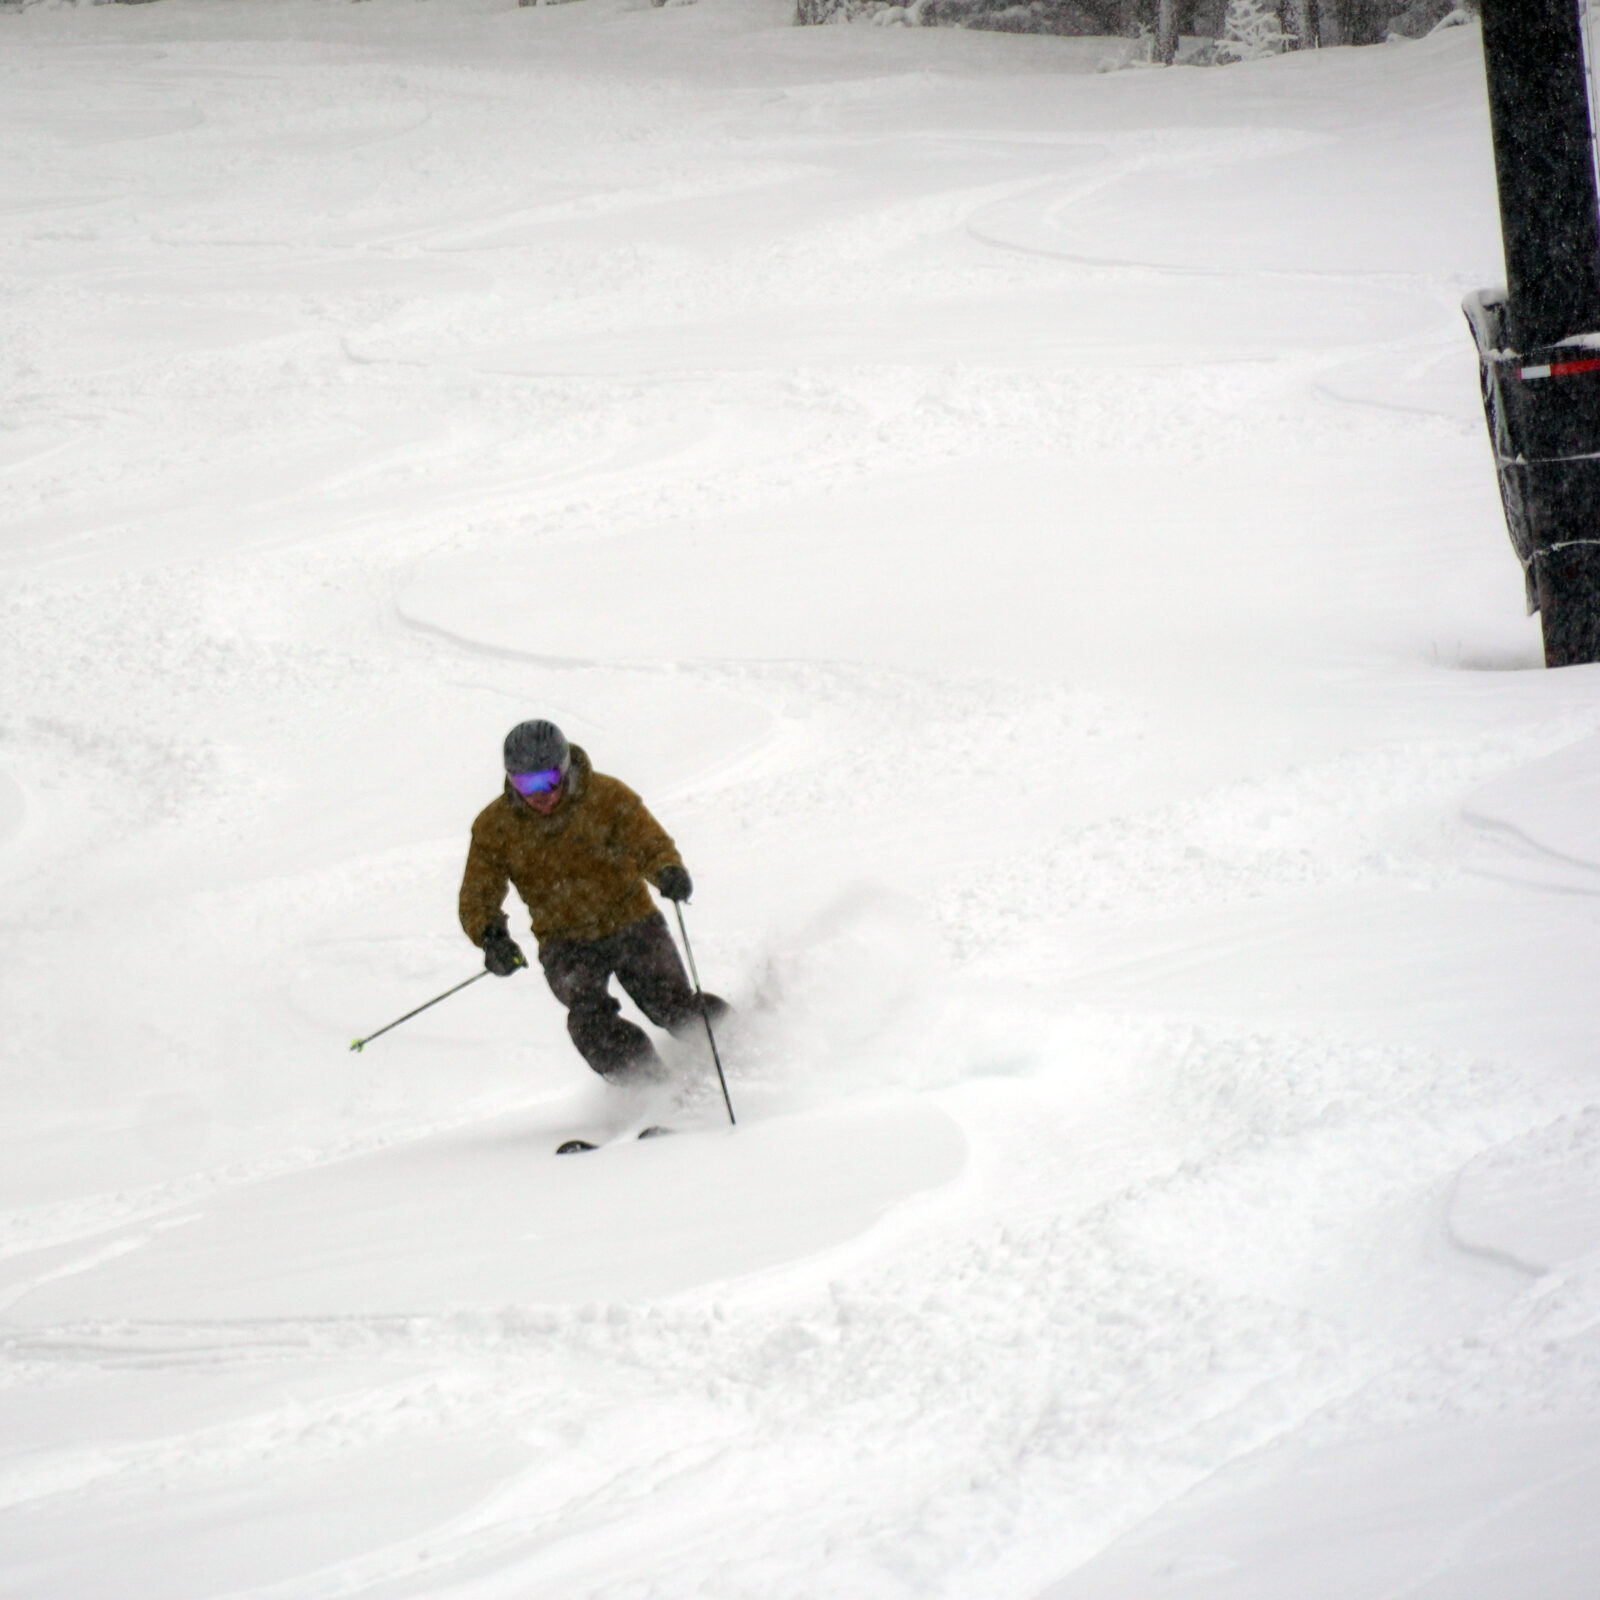 Skier making powder turn at Mission Ridge